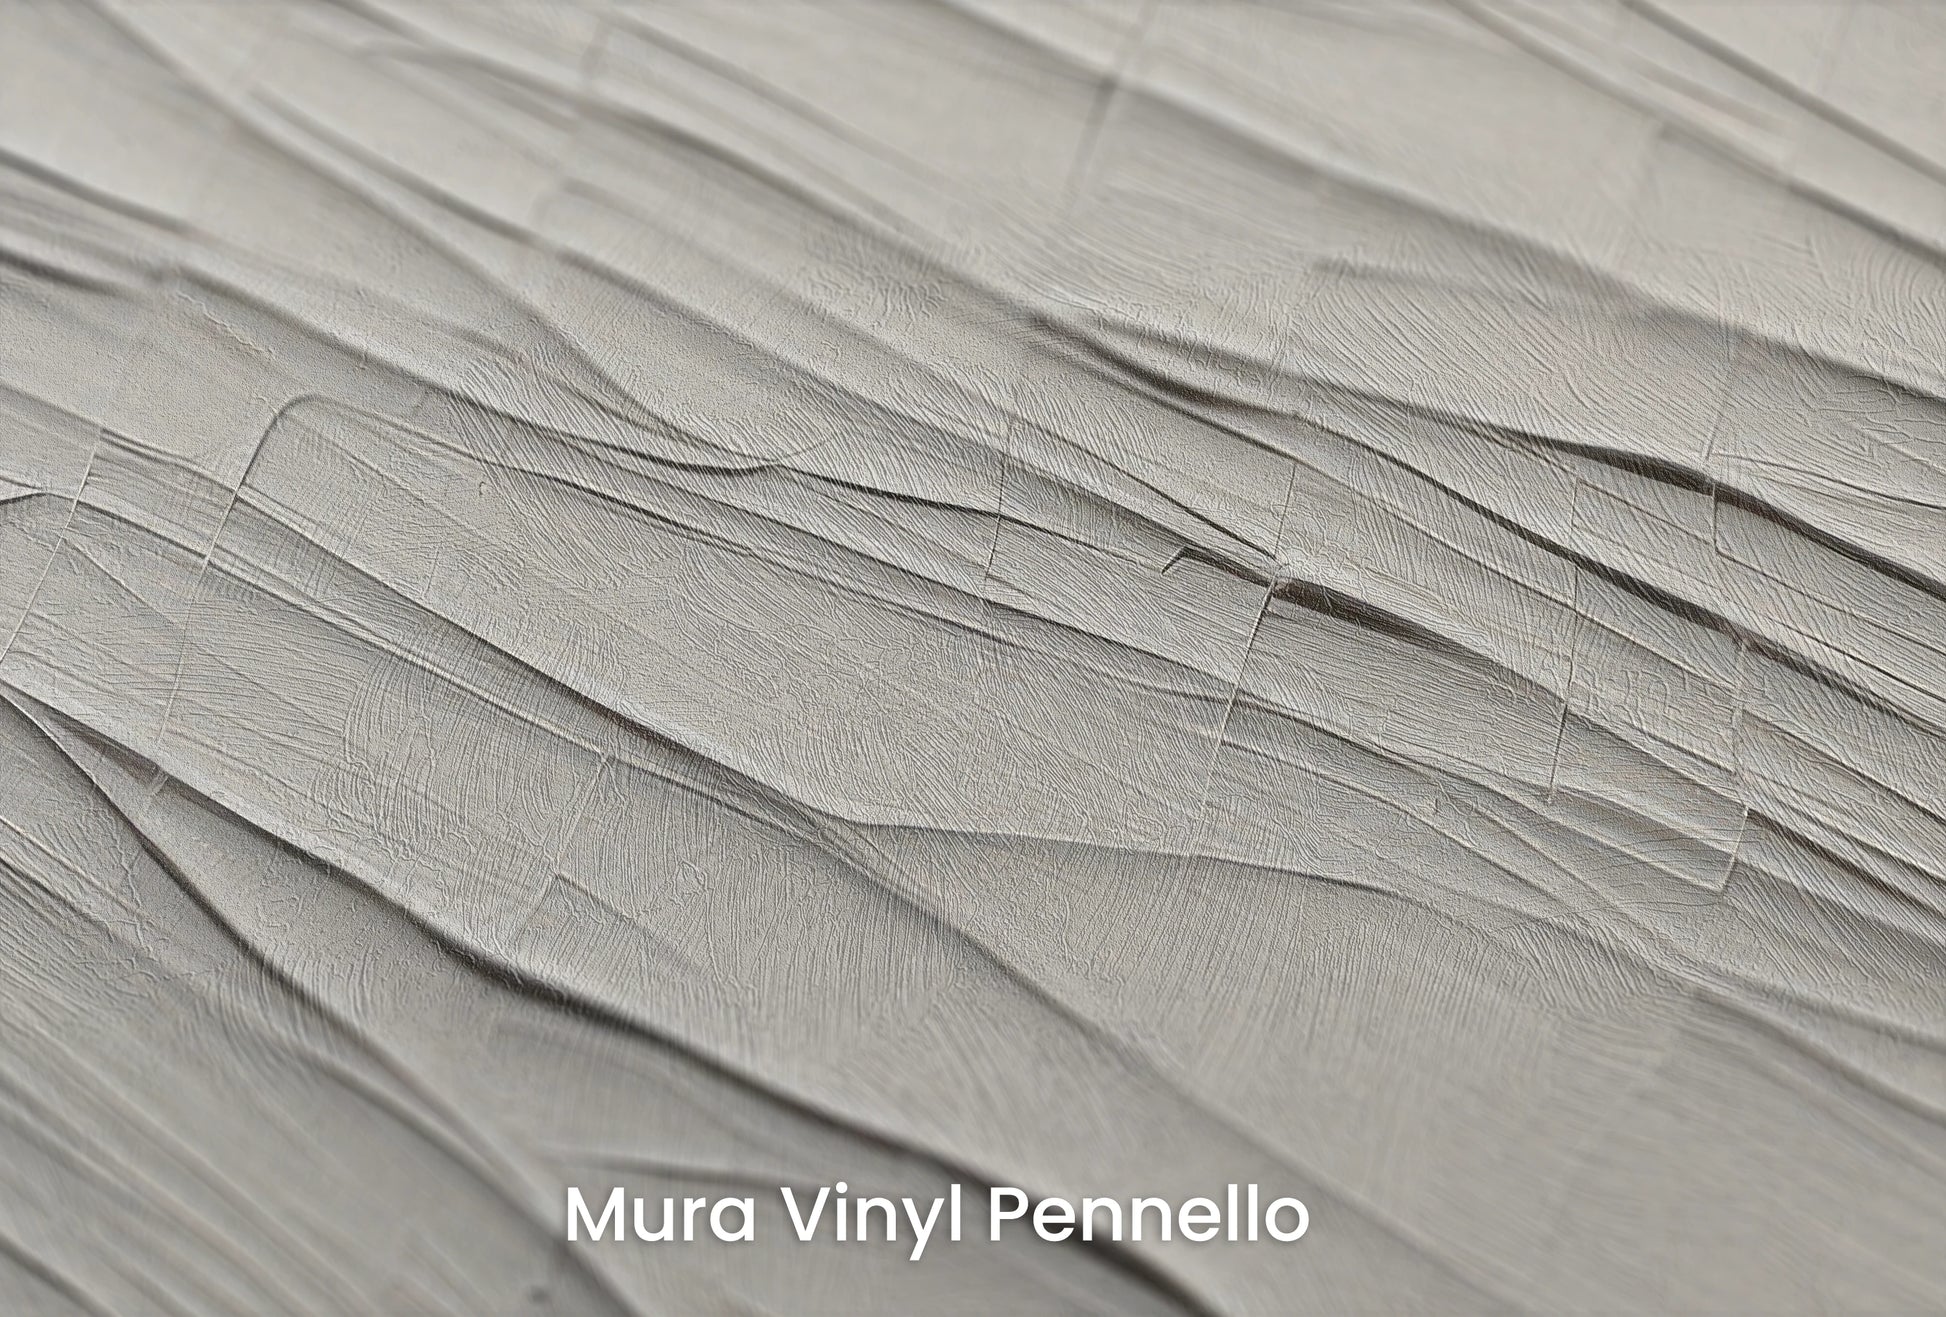 Zbliżenie na artystyczną fototapetę o nazwie Subtle Dynamics na podłożu Mura Vinyl Pennello - faktura pociągnięć pędzla malarskiego.